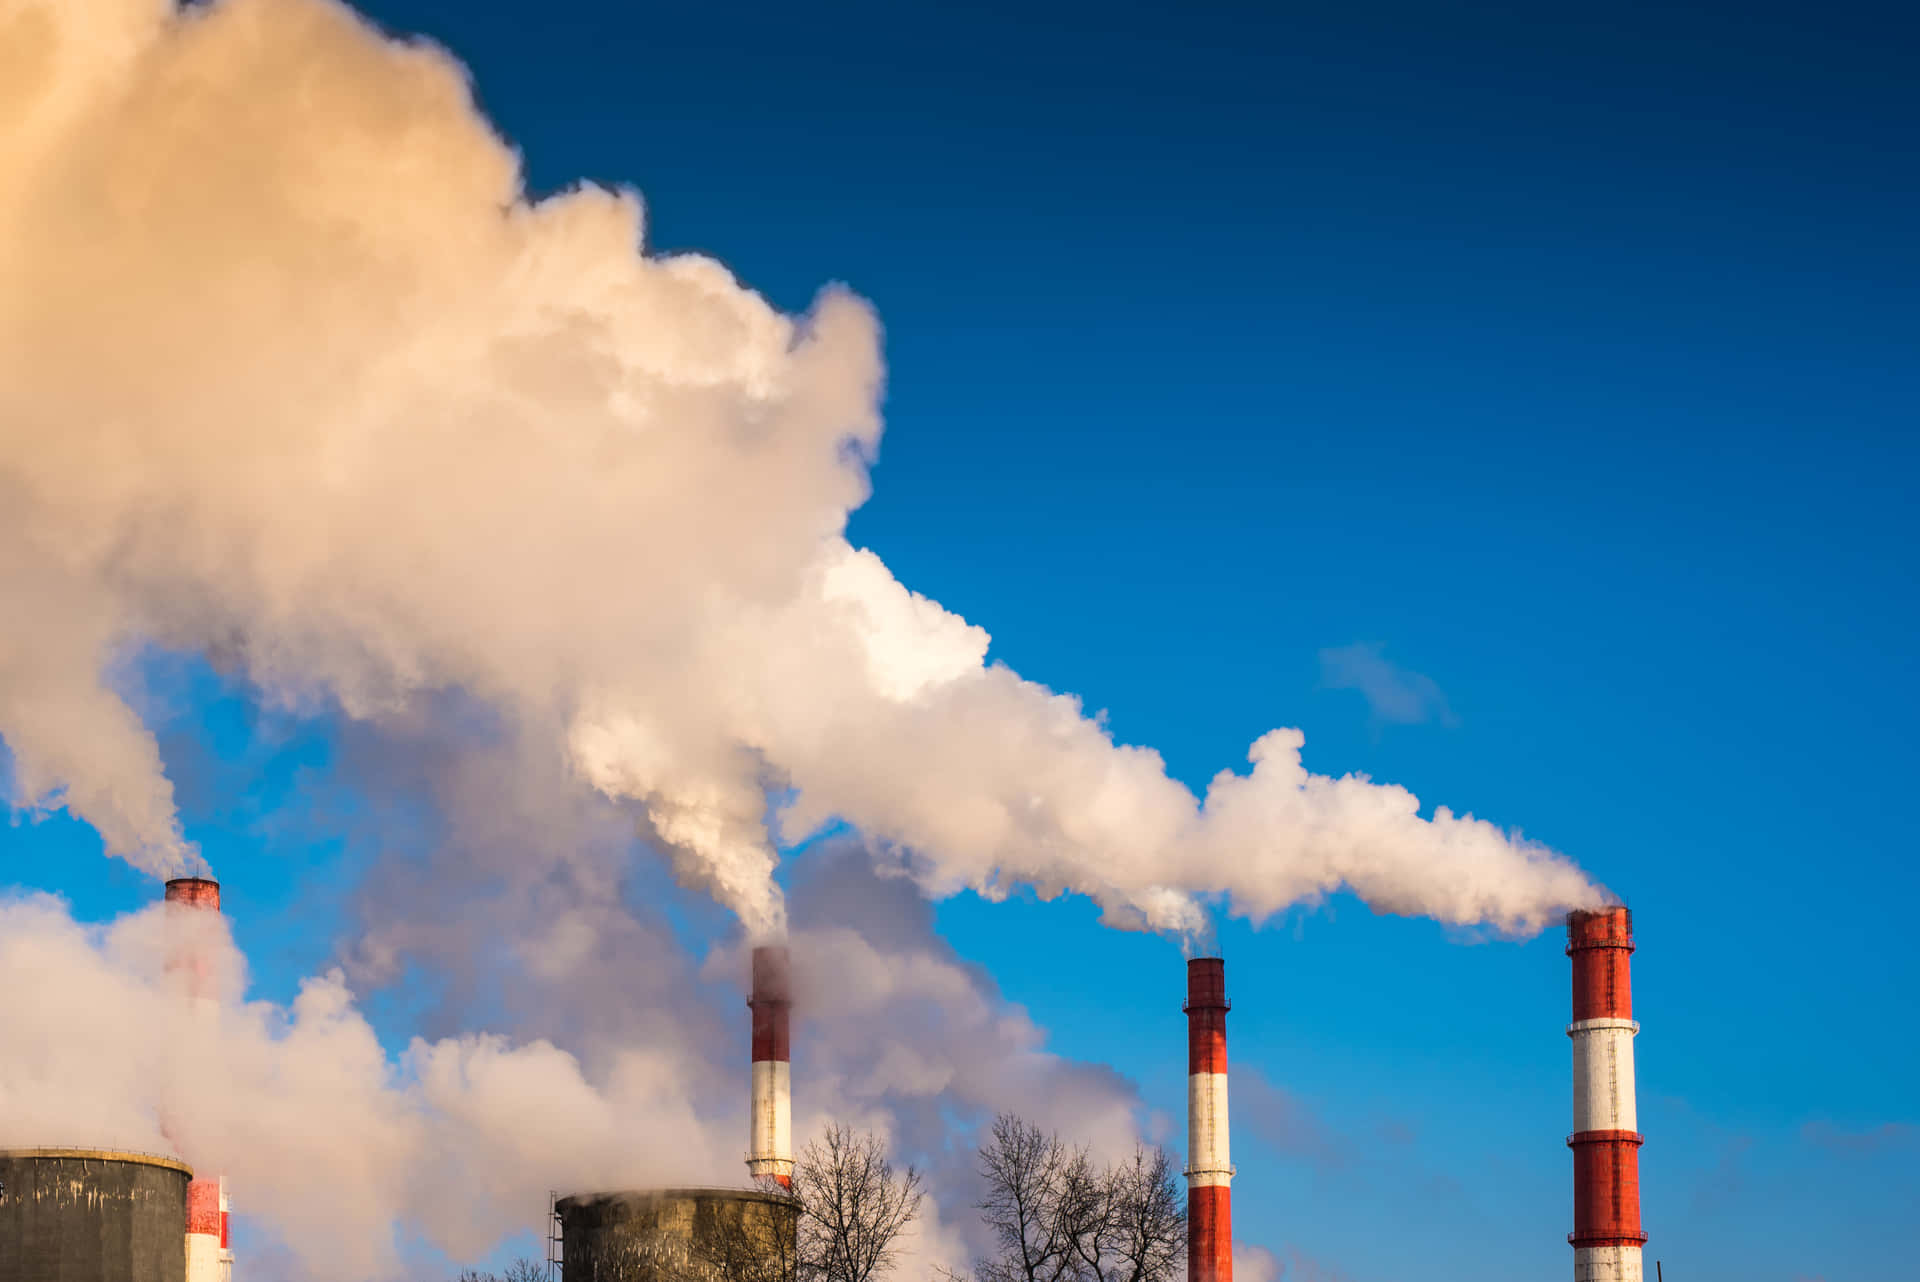 Refineríaindustrial Y Ciudad En La Distancia, Ambos Grandes Contribuyentes A La Contaminación Del Aire.